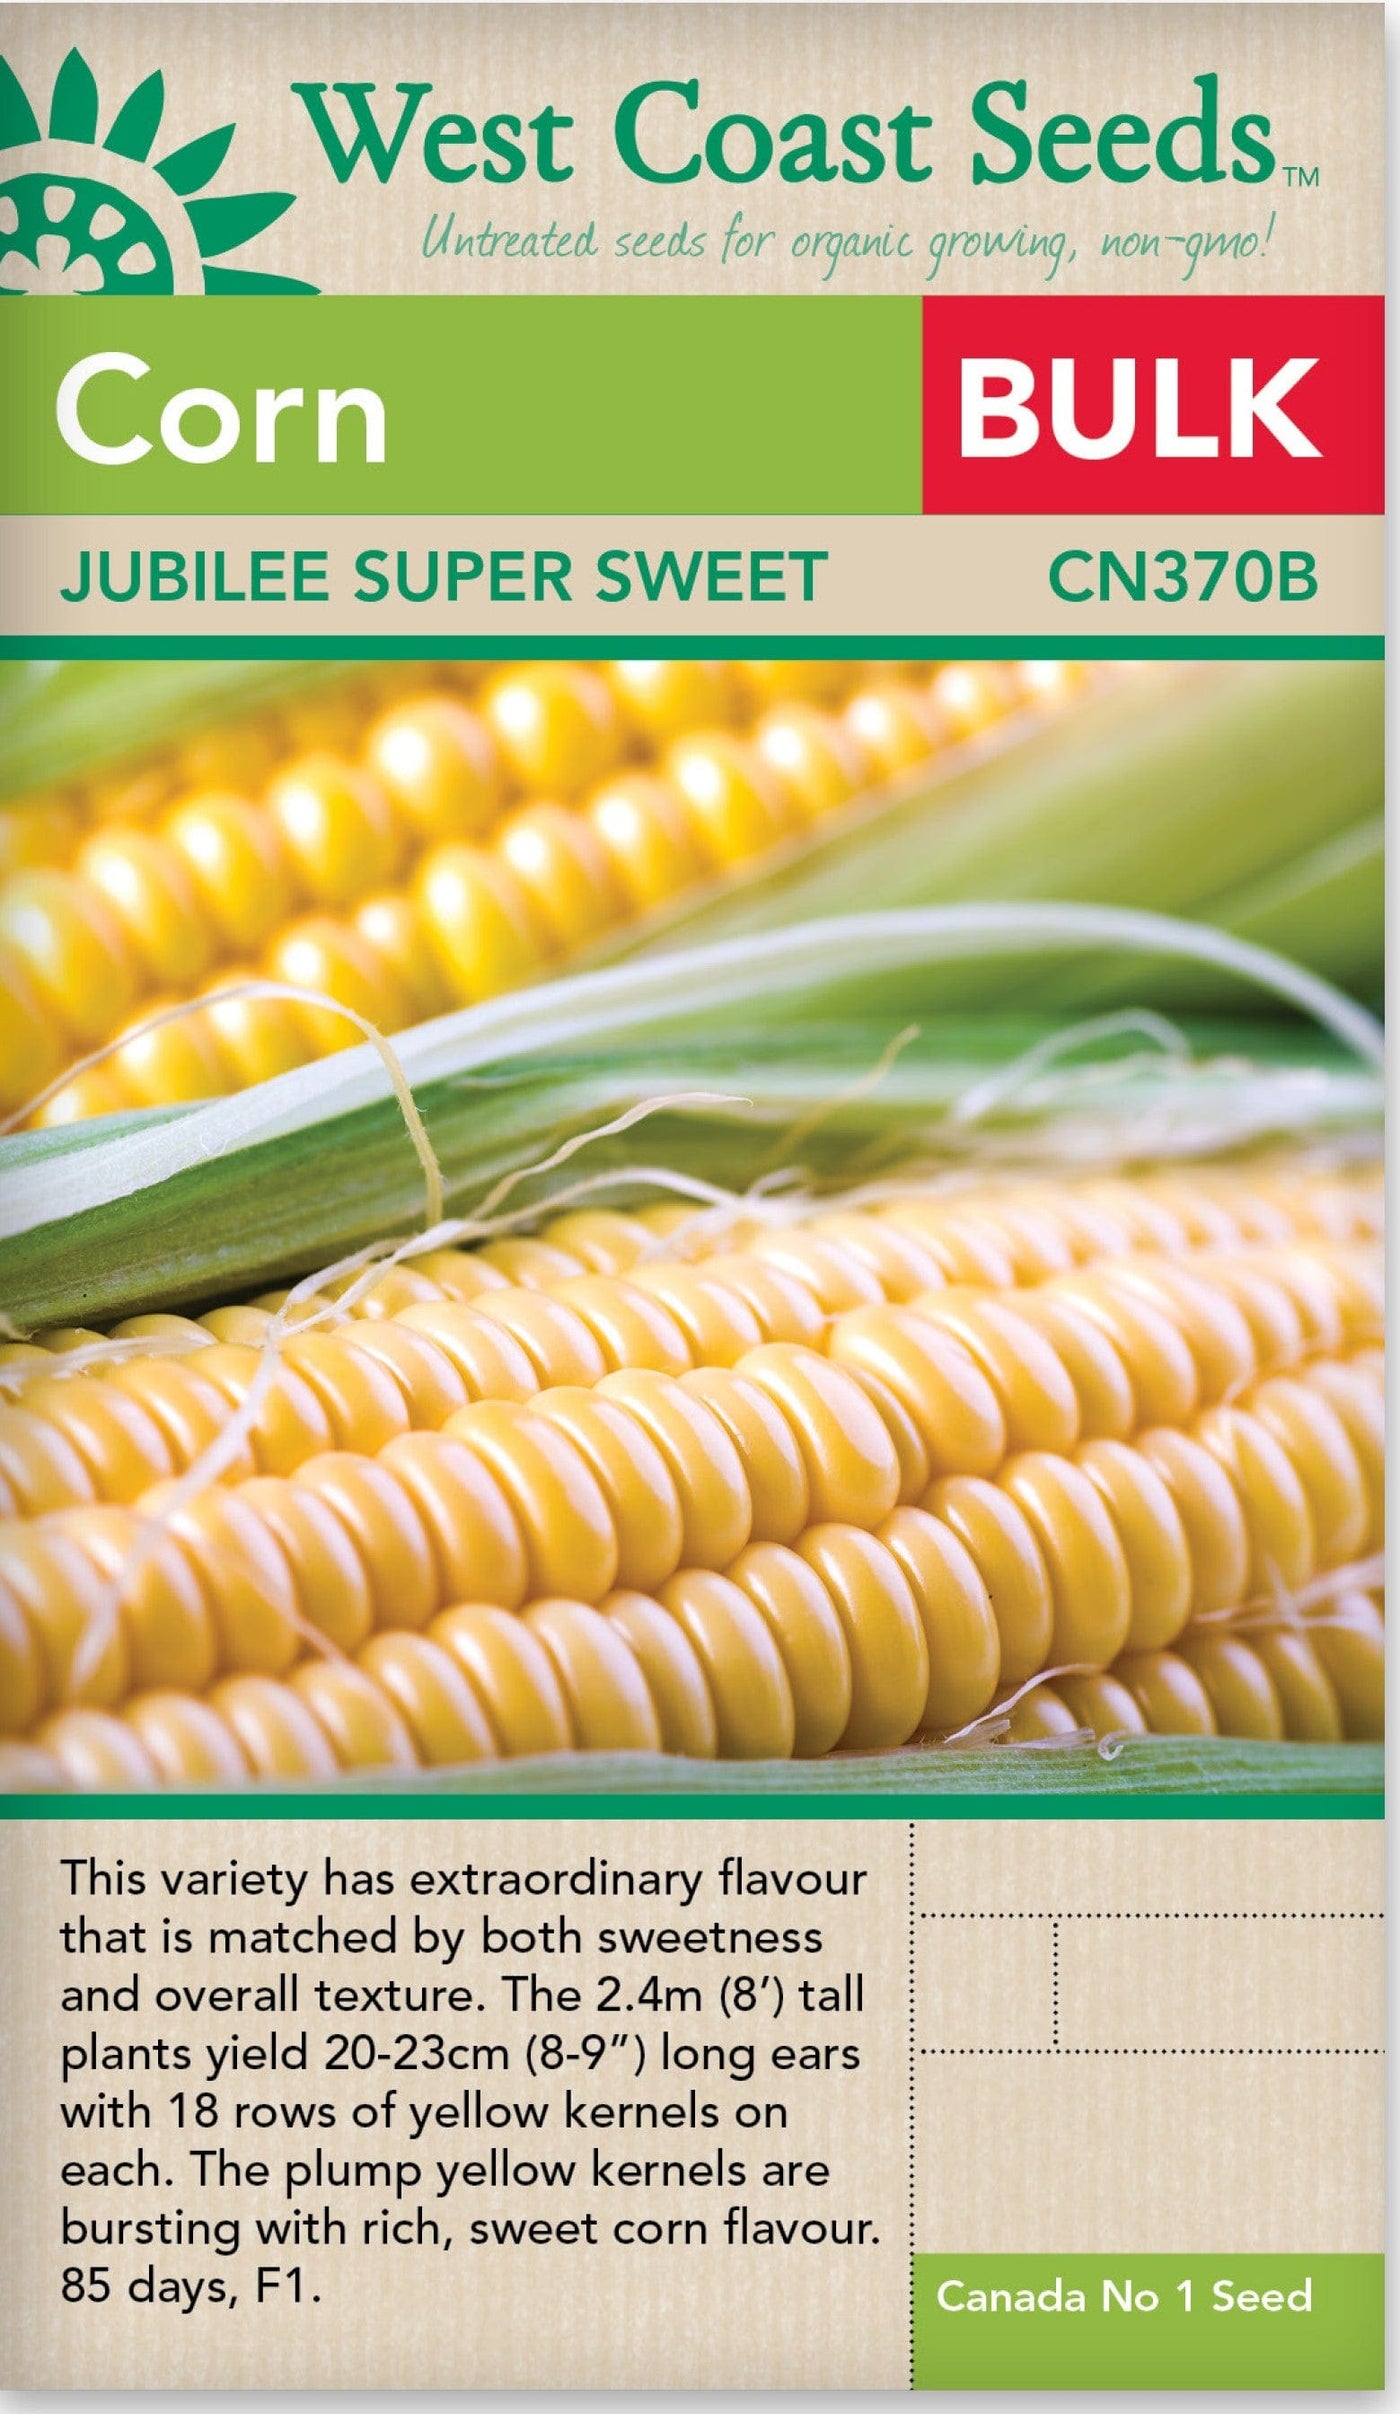 BULK Corn Jubilee Super Sweet - West Coast Seeds